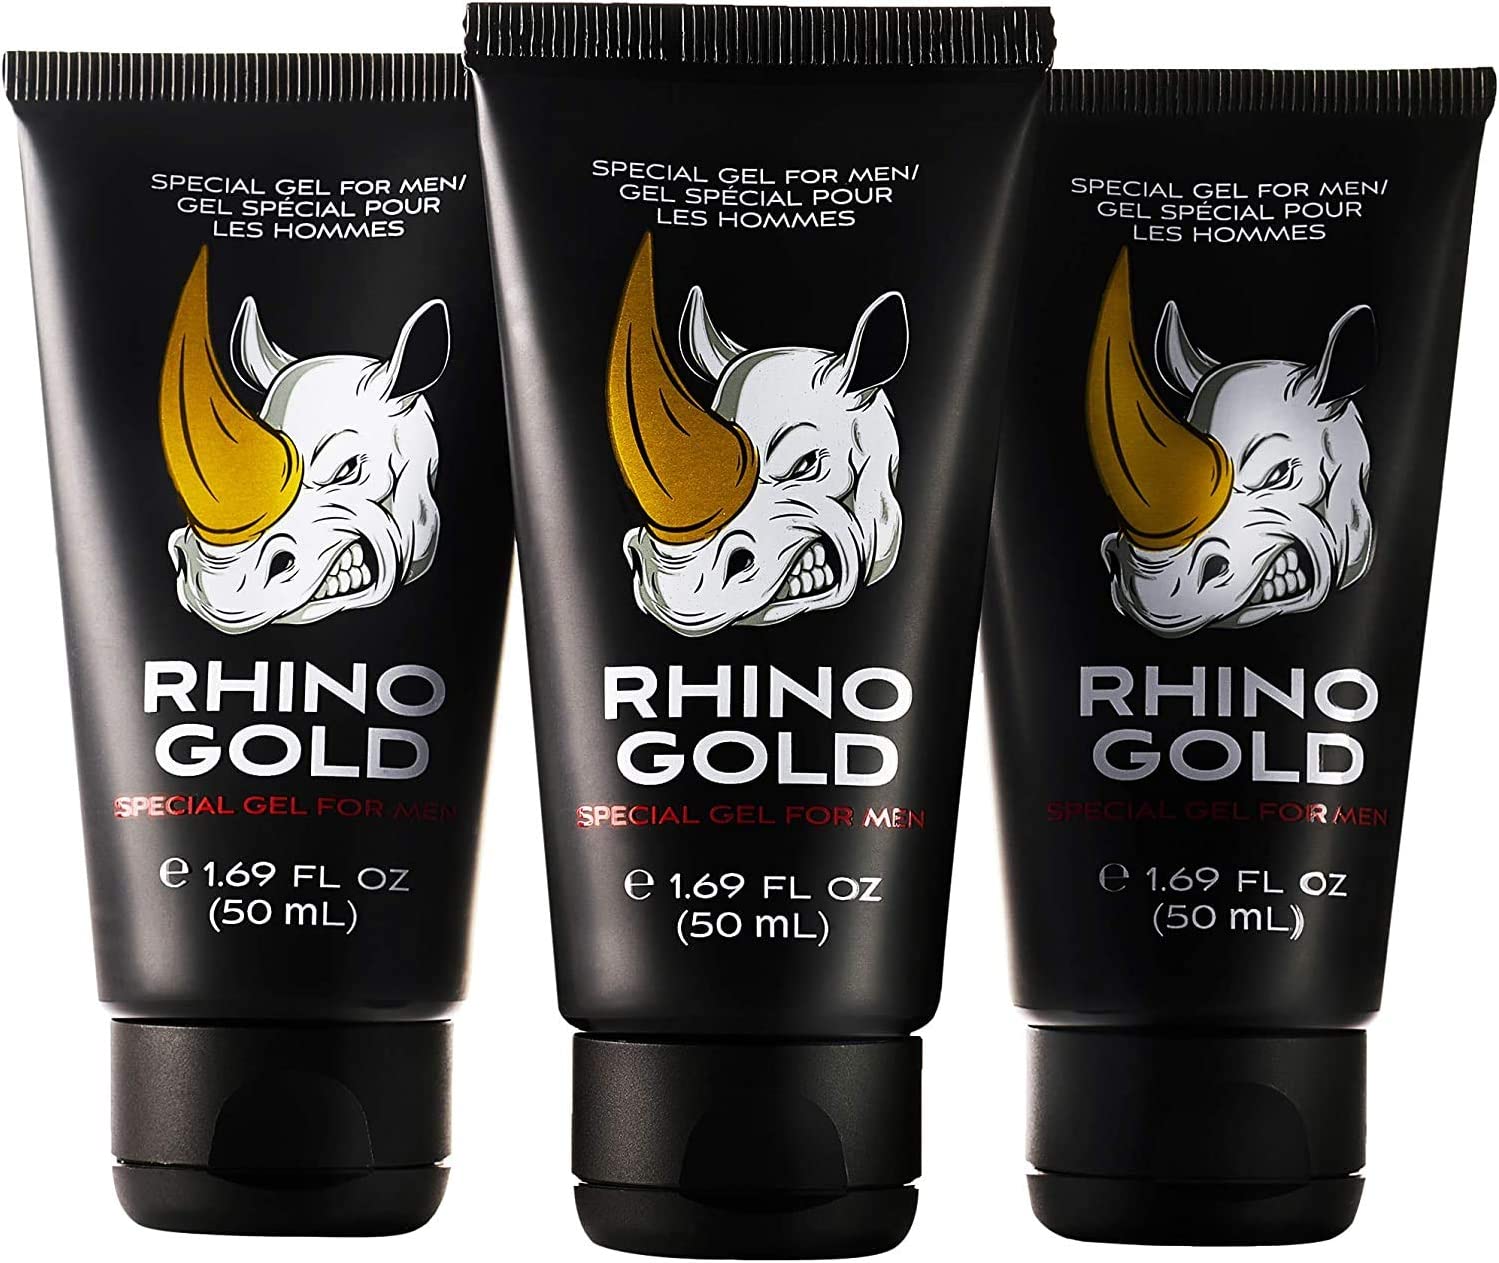 Rhino gold gel Ingredientes - que contiene